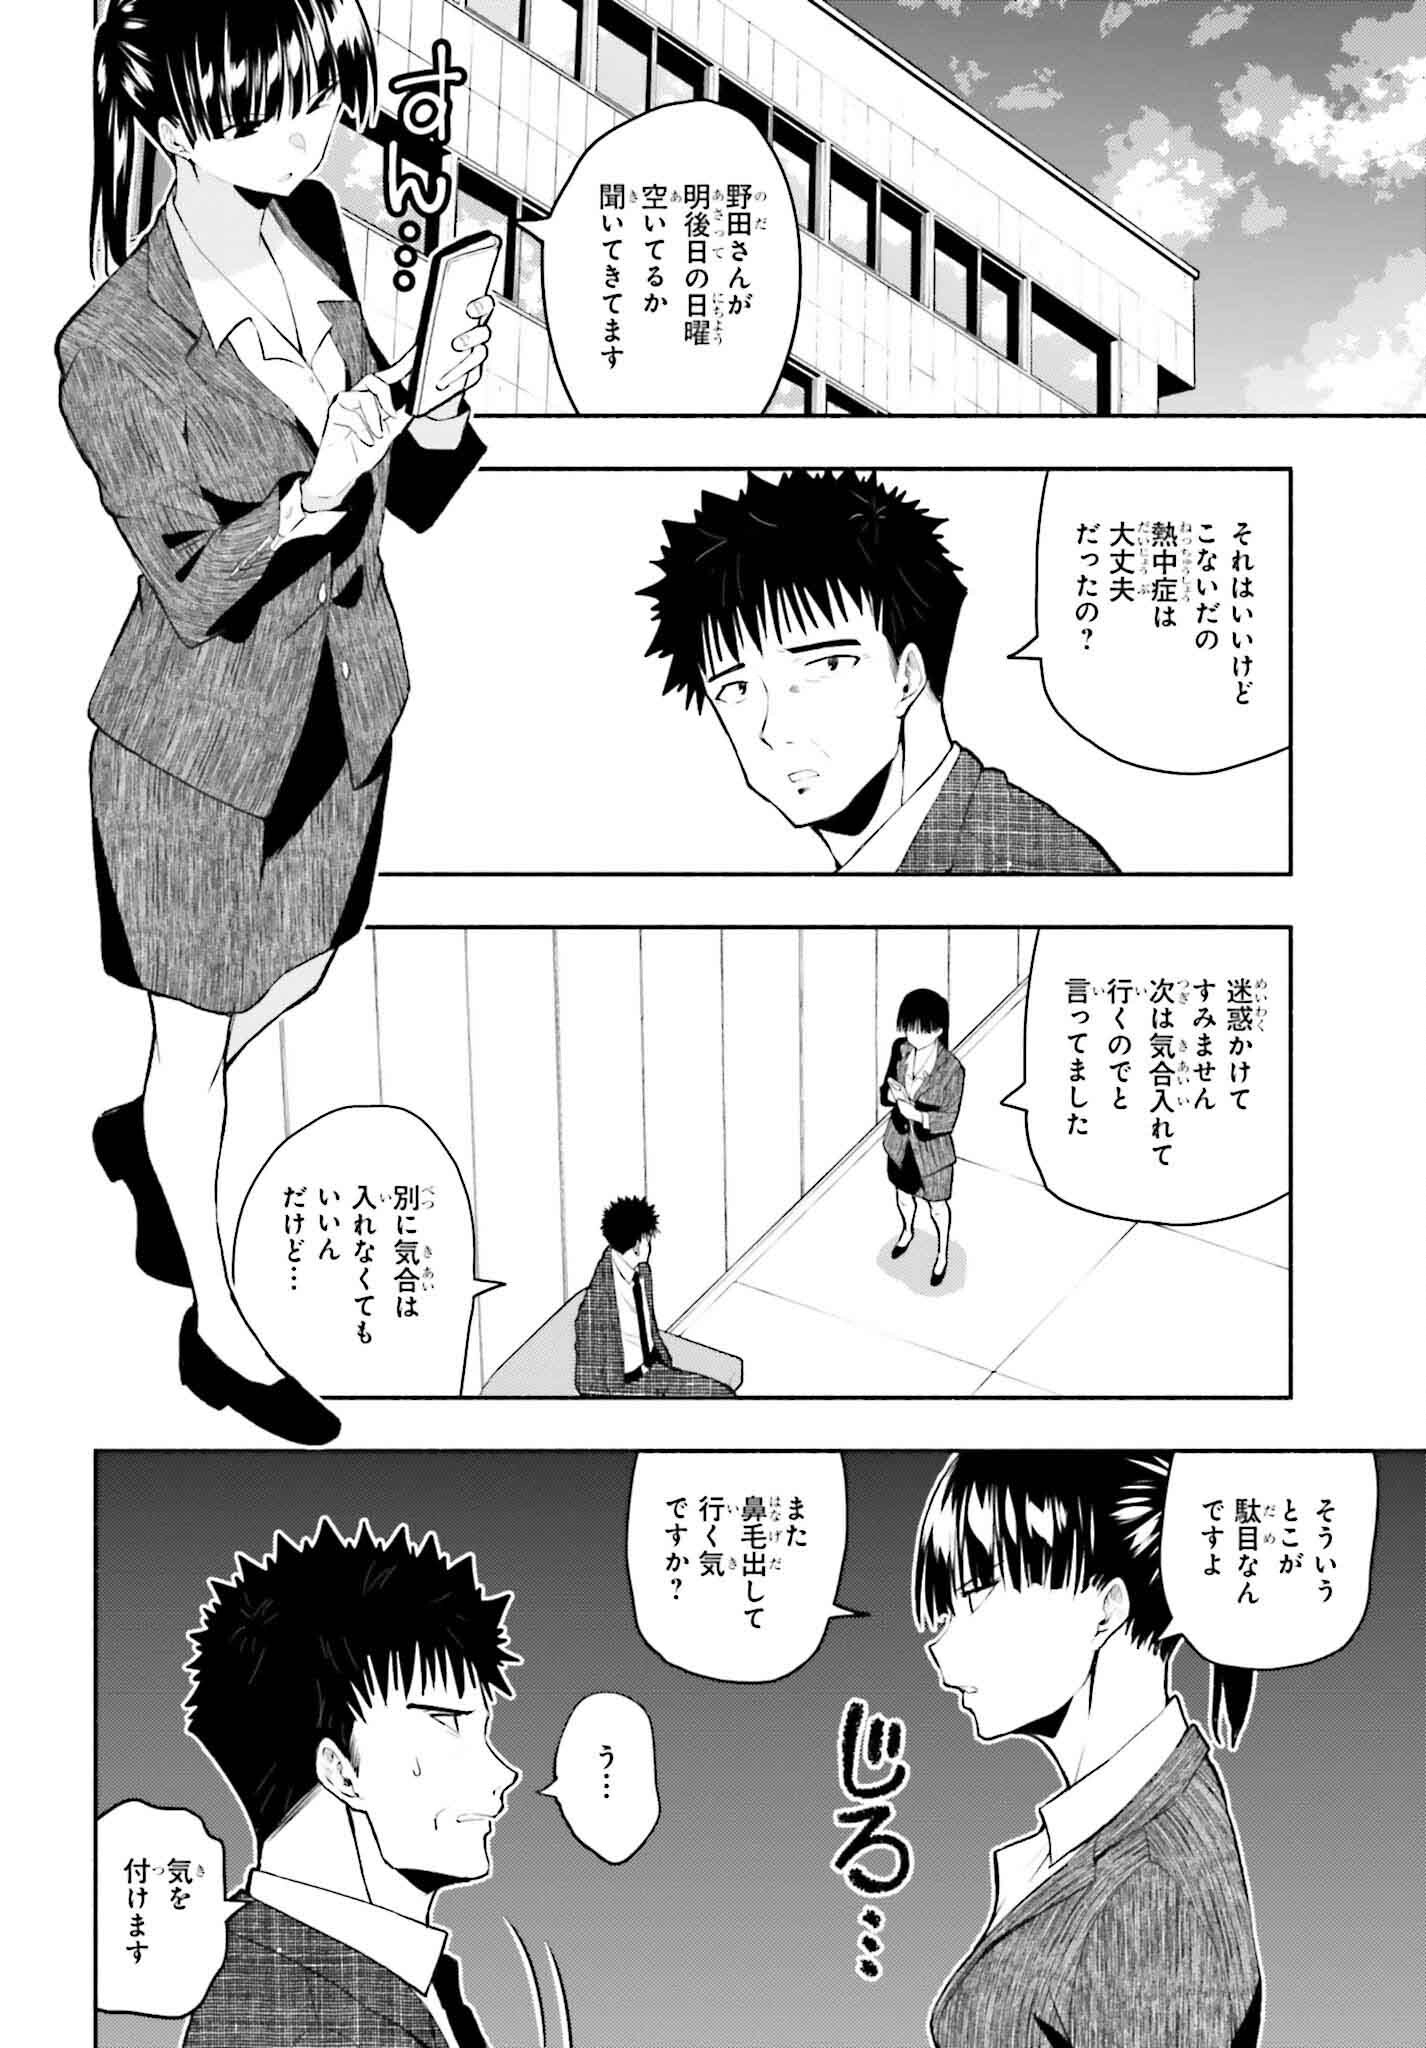 Omiai ni Sugoi Komyushou ga Kita - Chapter 12 - Page 2